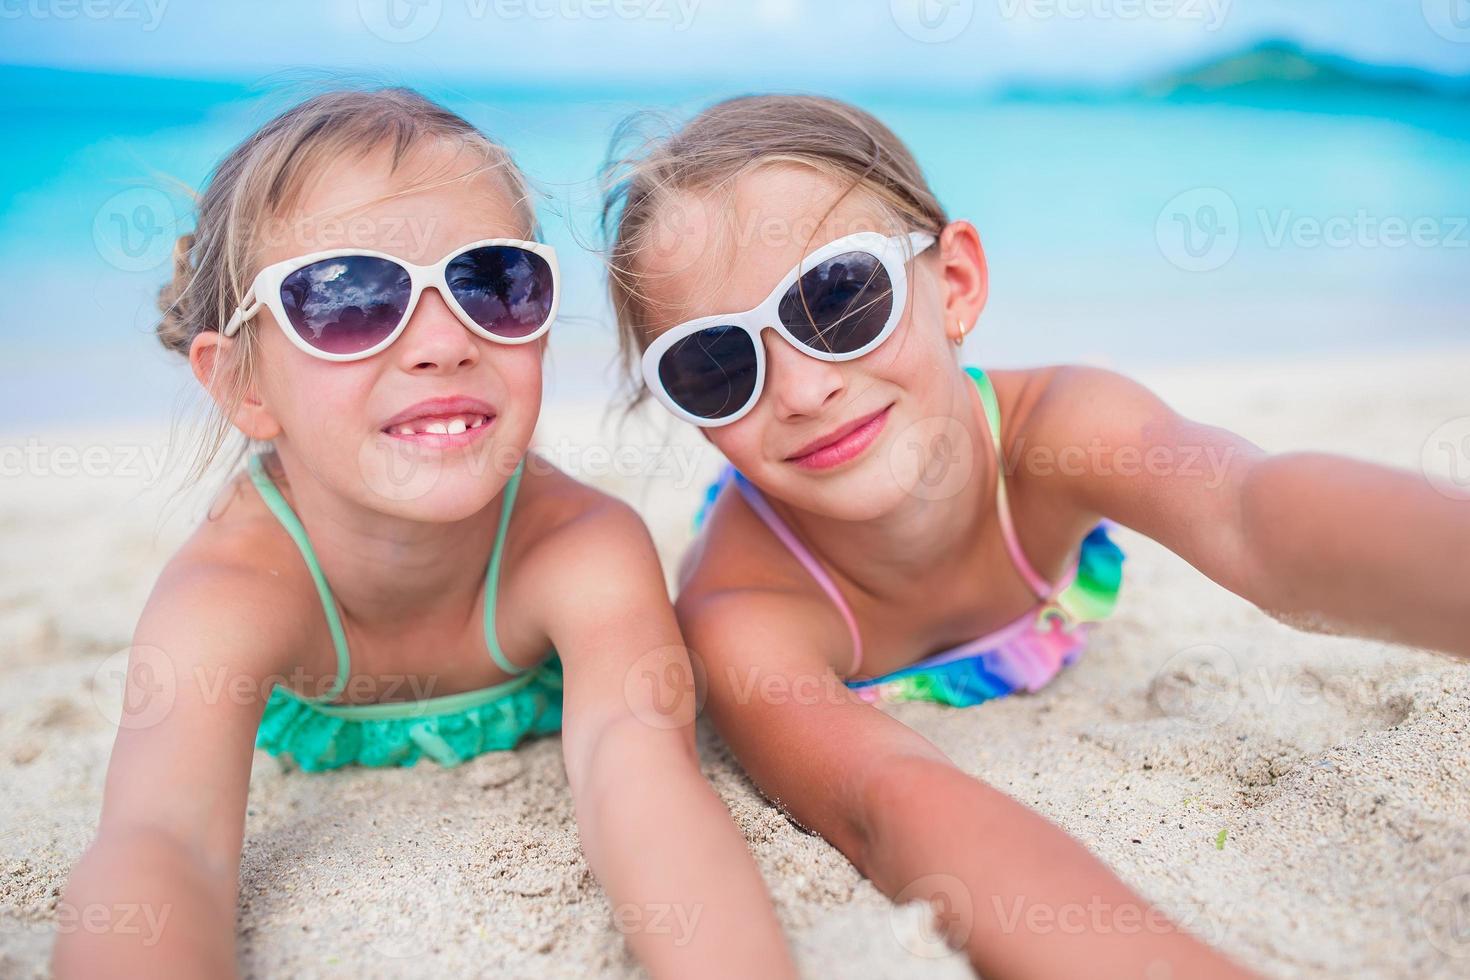 förtjusande liten systrar på strand under sommar semester liggande på värma sand foto